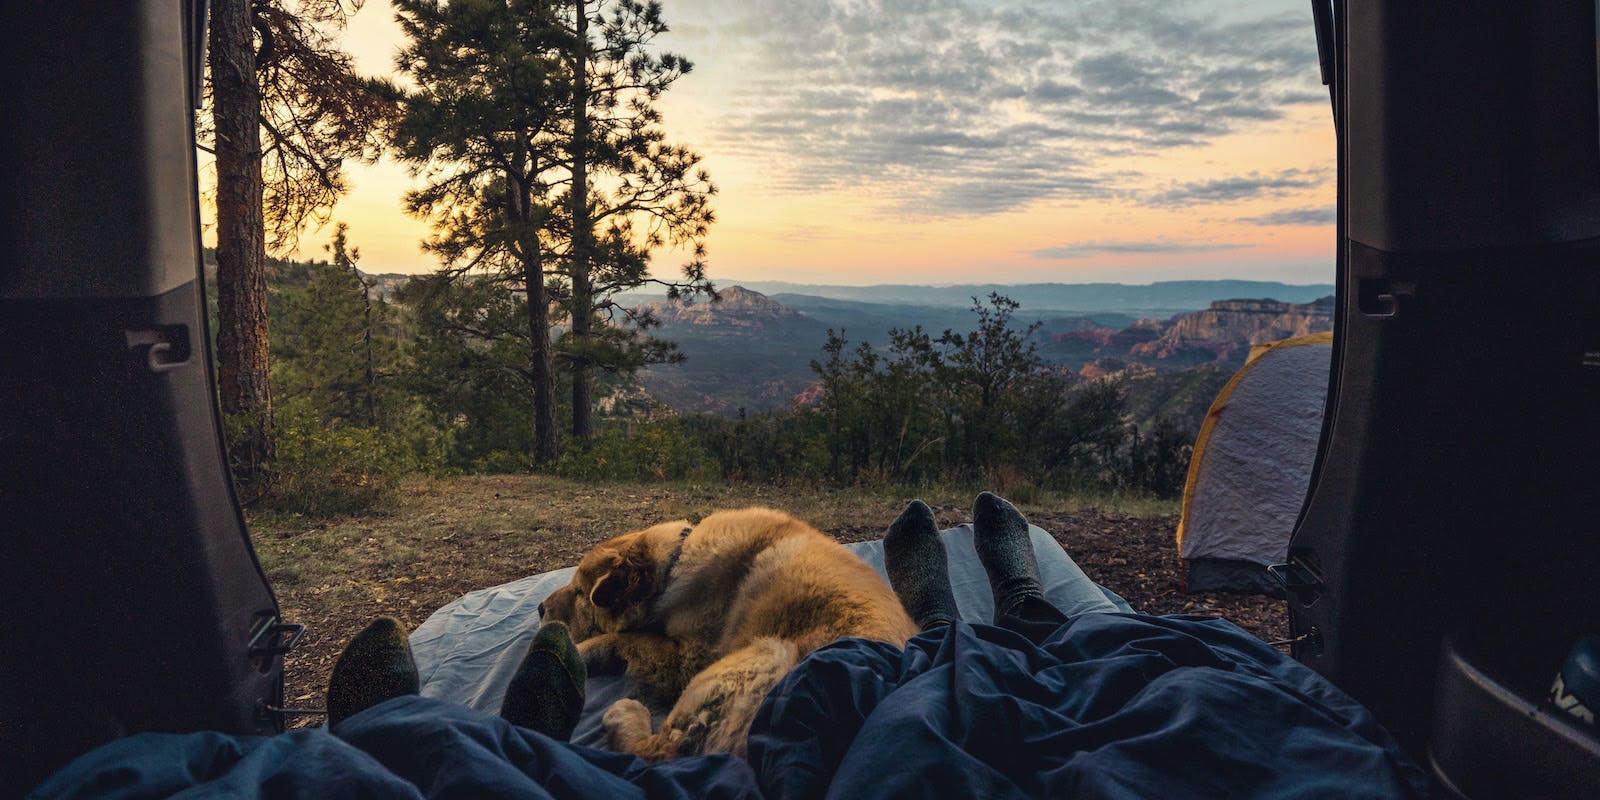 Una fotografía tomada desde el interior de un vehículo muestra una amplia vista de la montaña a lo lejos y las piernas de una persona en un saco de dormir con un perro grande durmiendo al lado.